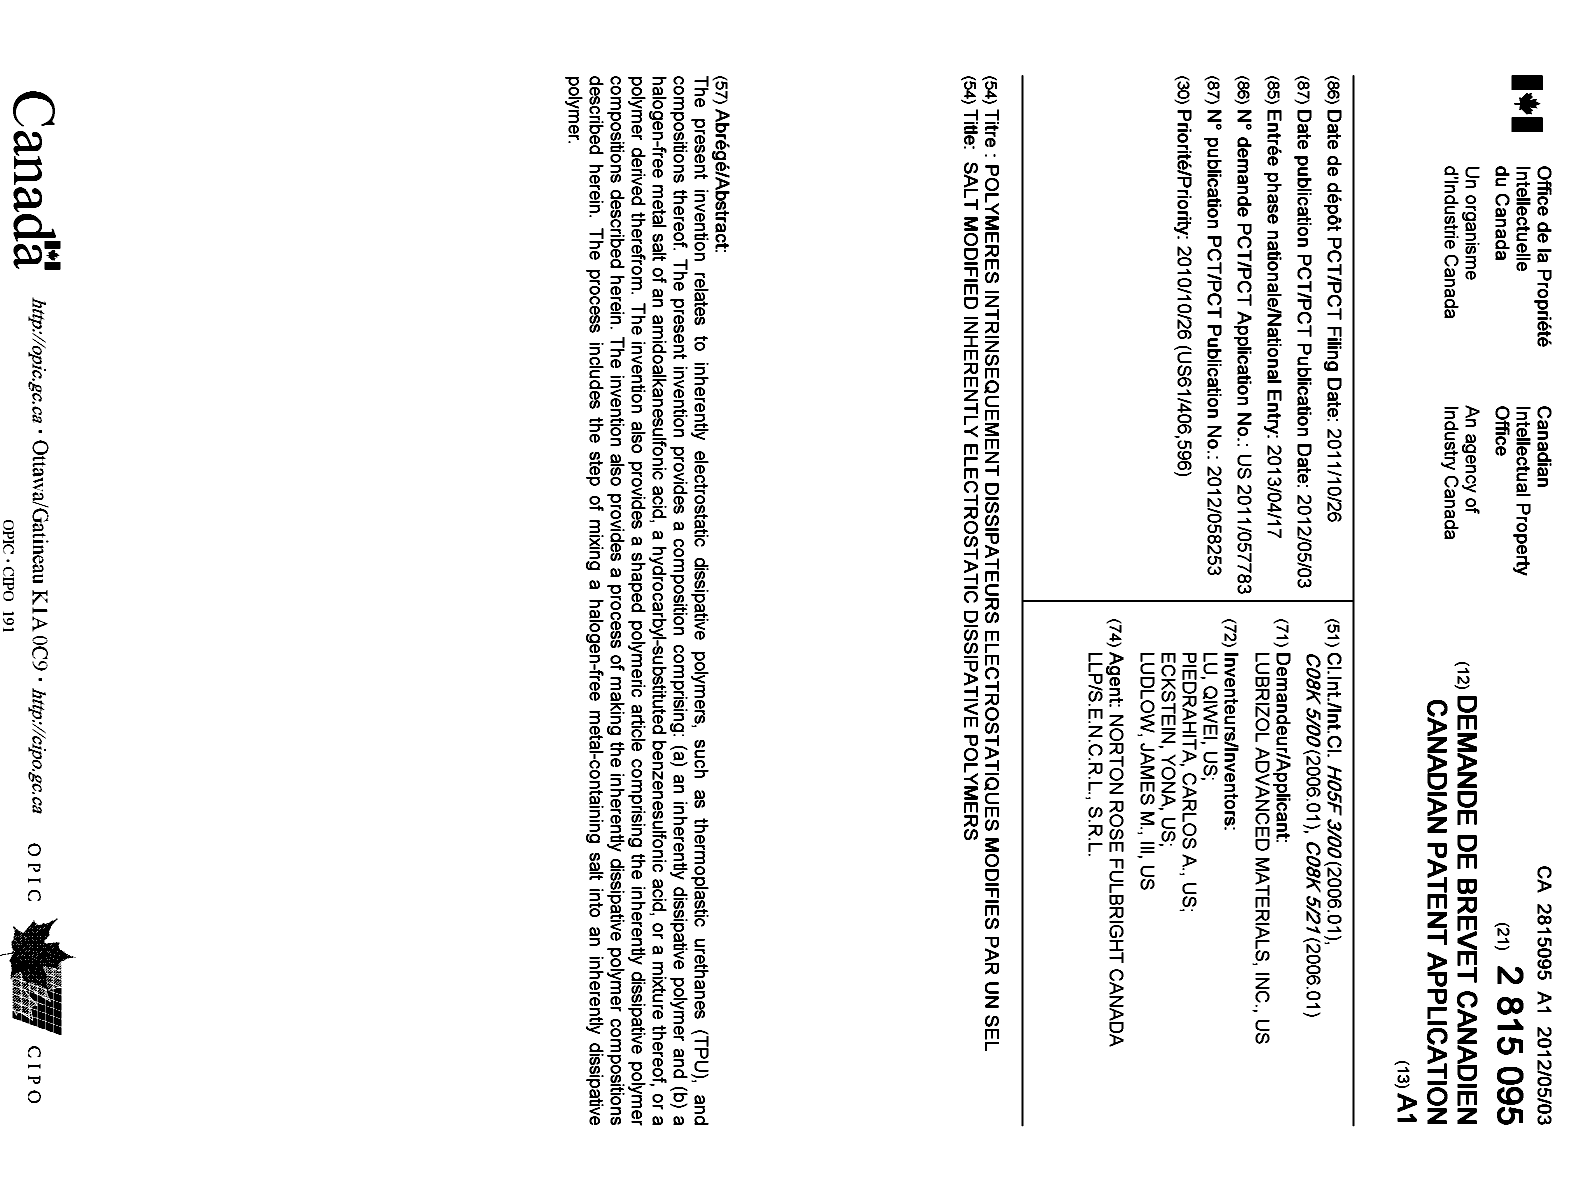 Document de brevet canadien 2815095. Page couverture 20121228. Image 1 de 1